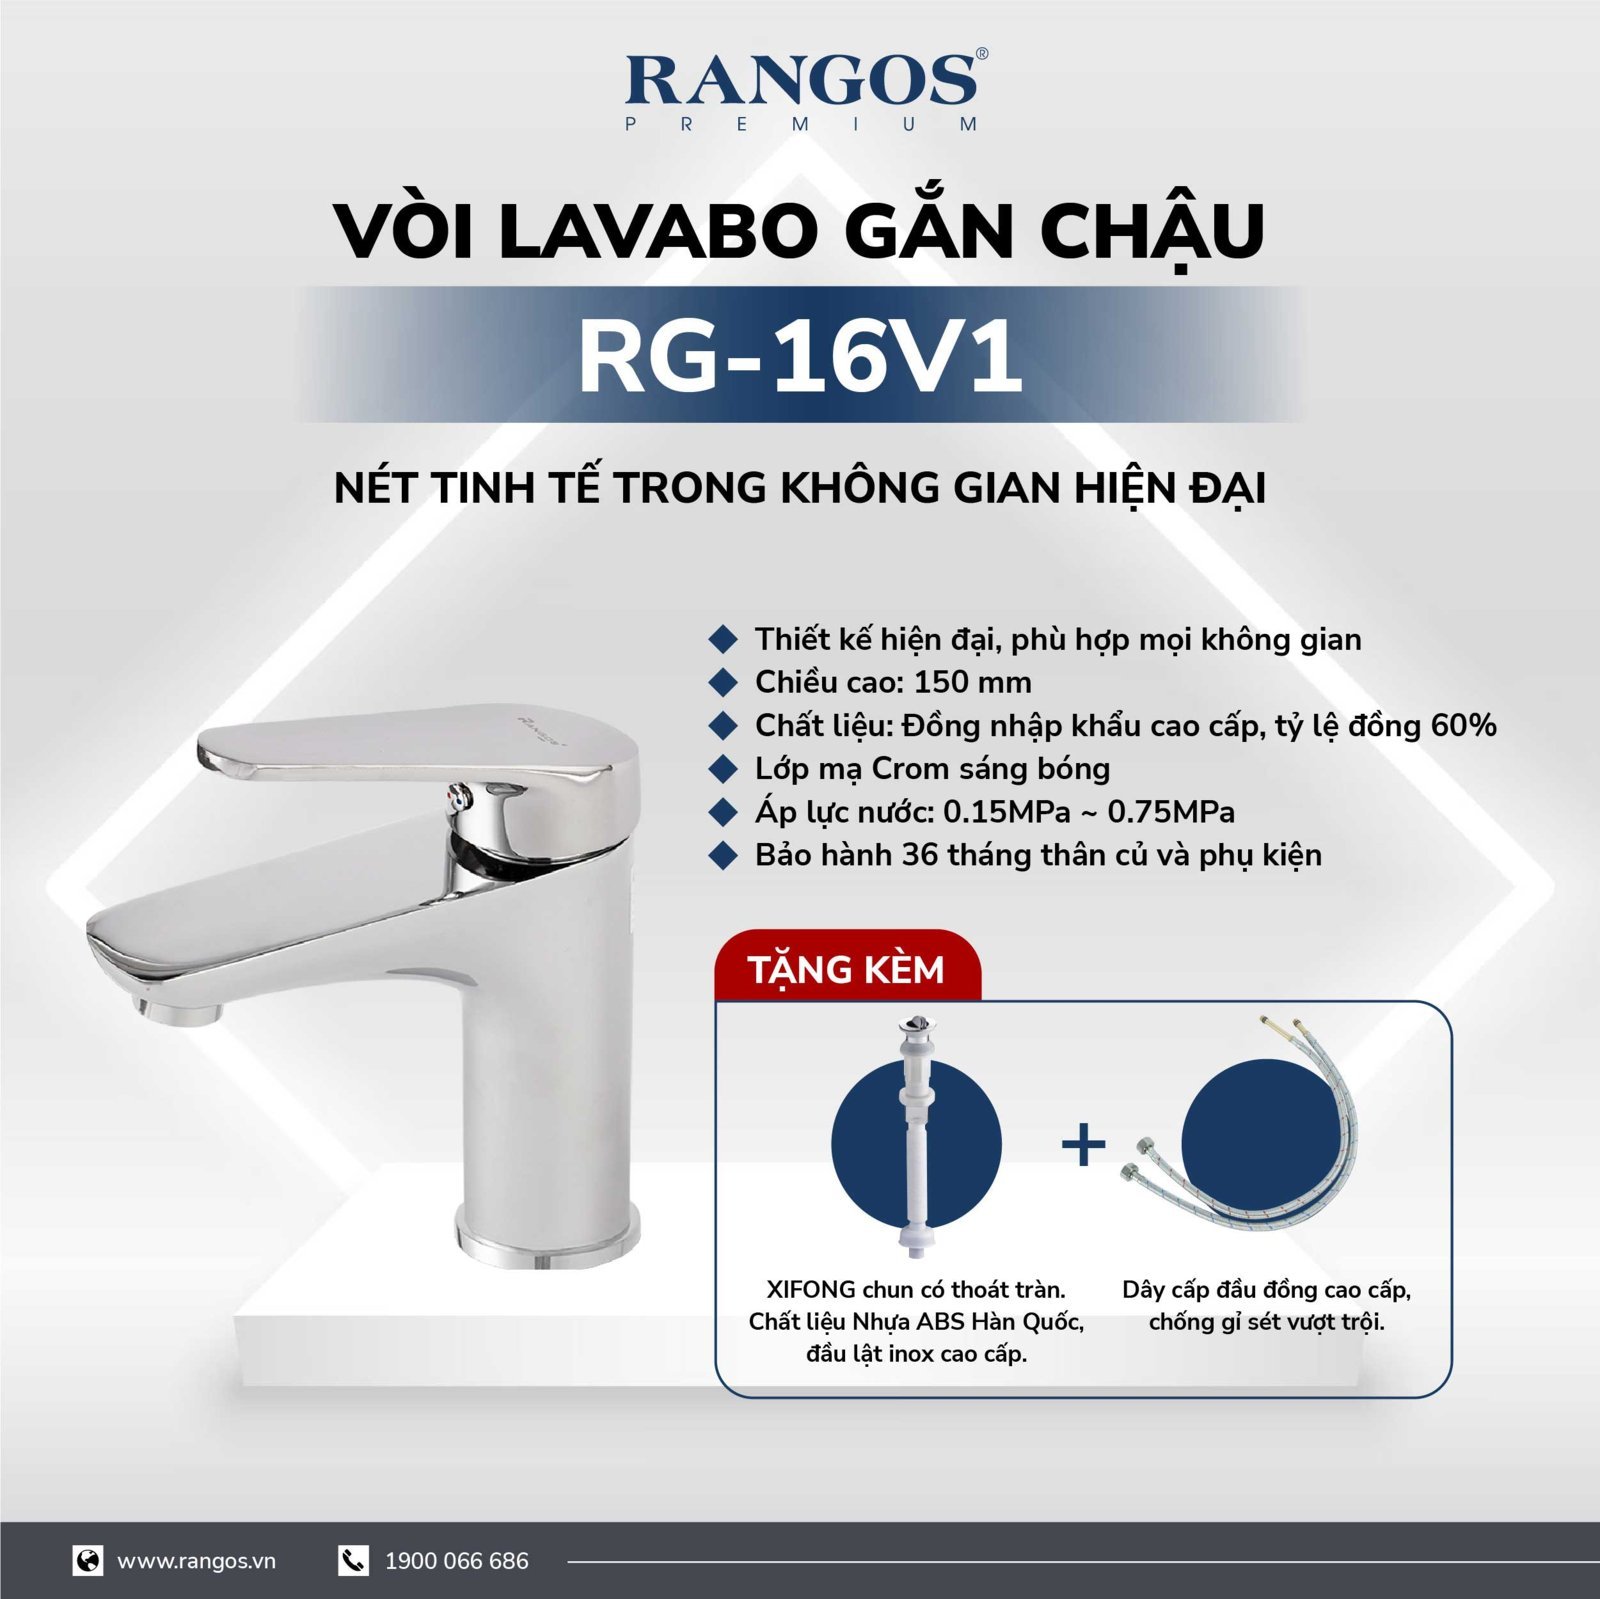 Bộ vòi lavabo gắn chậu Rangos RG-16v1